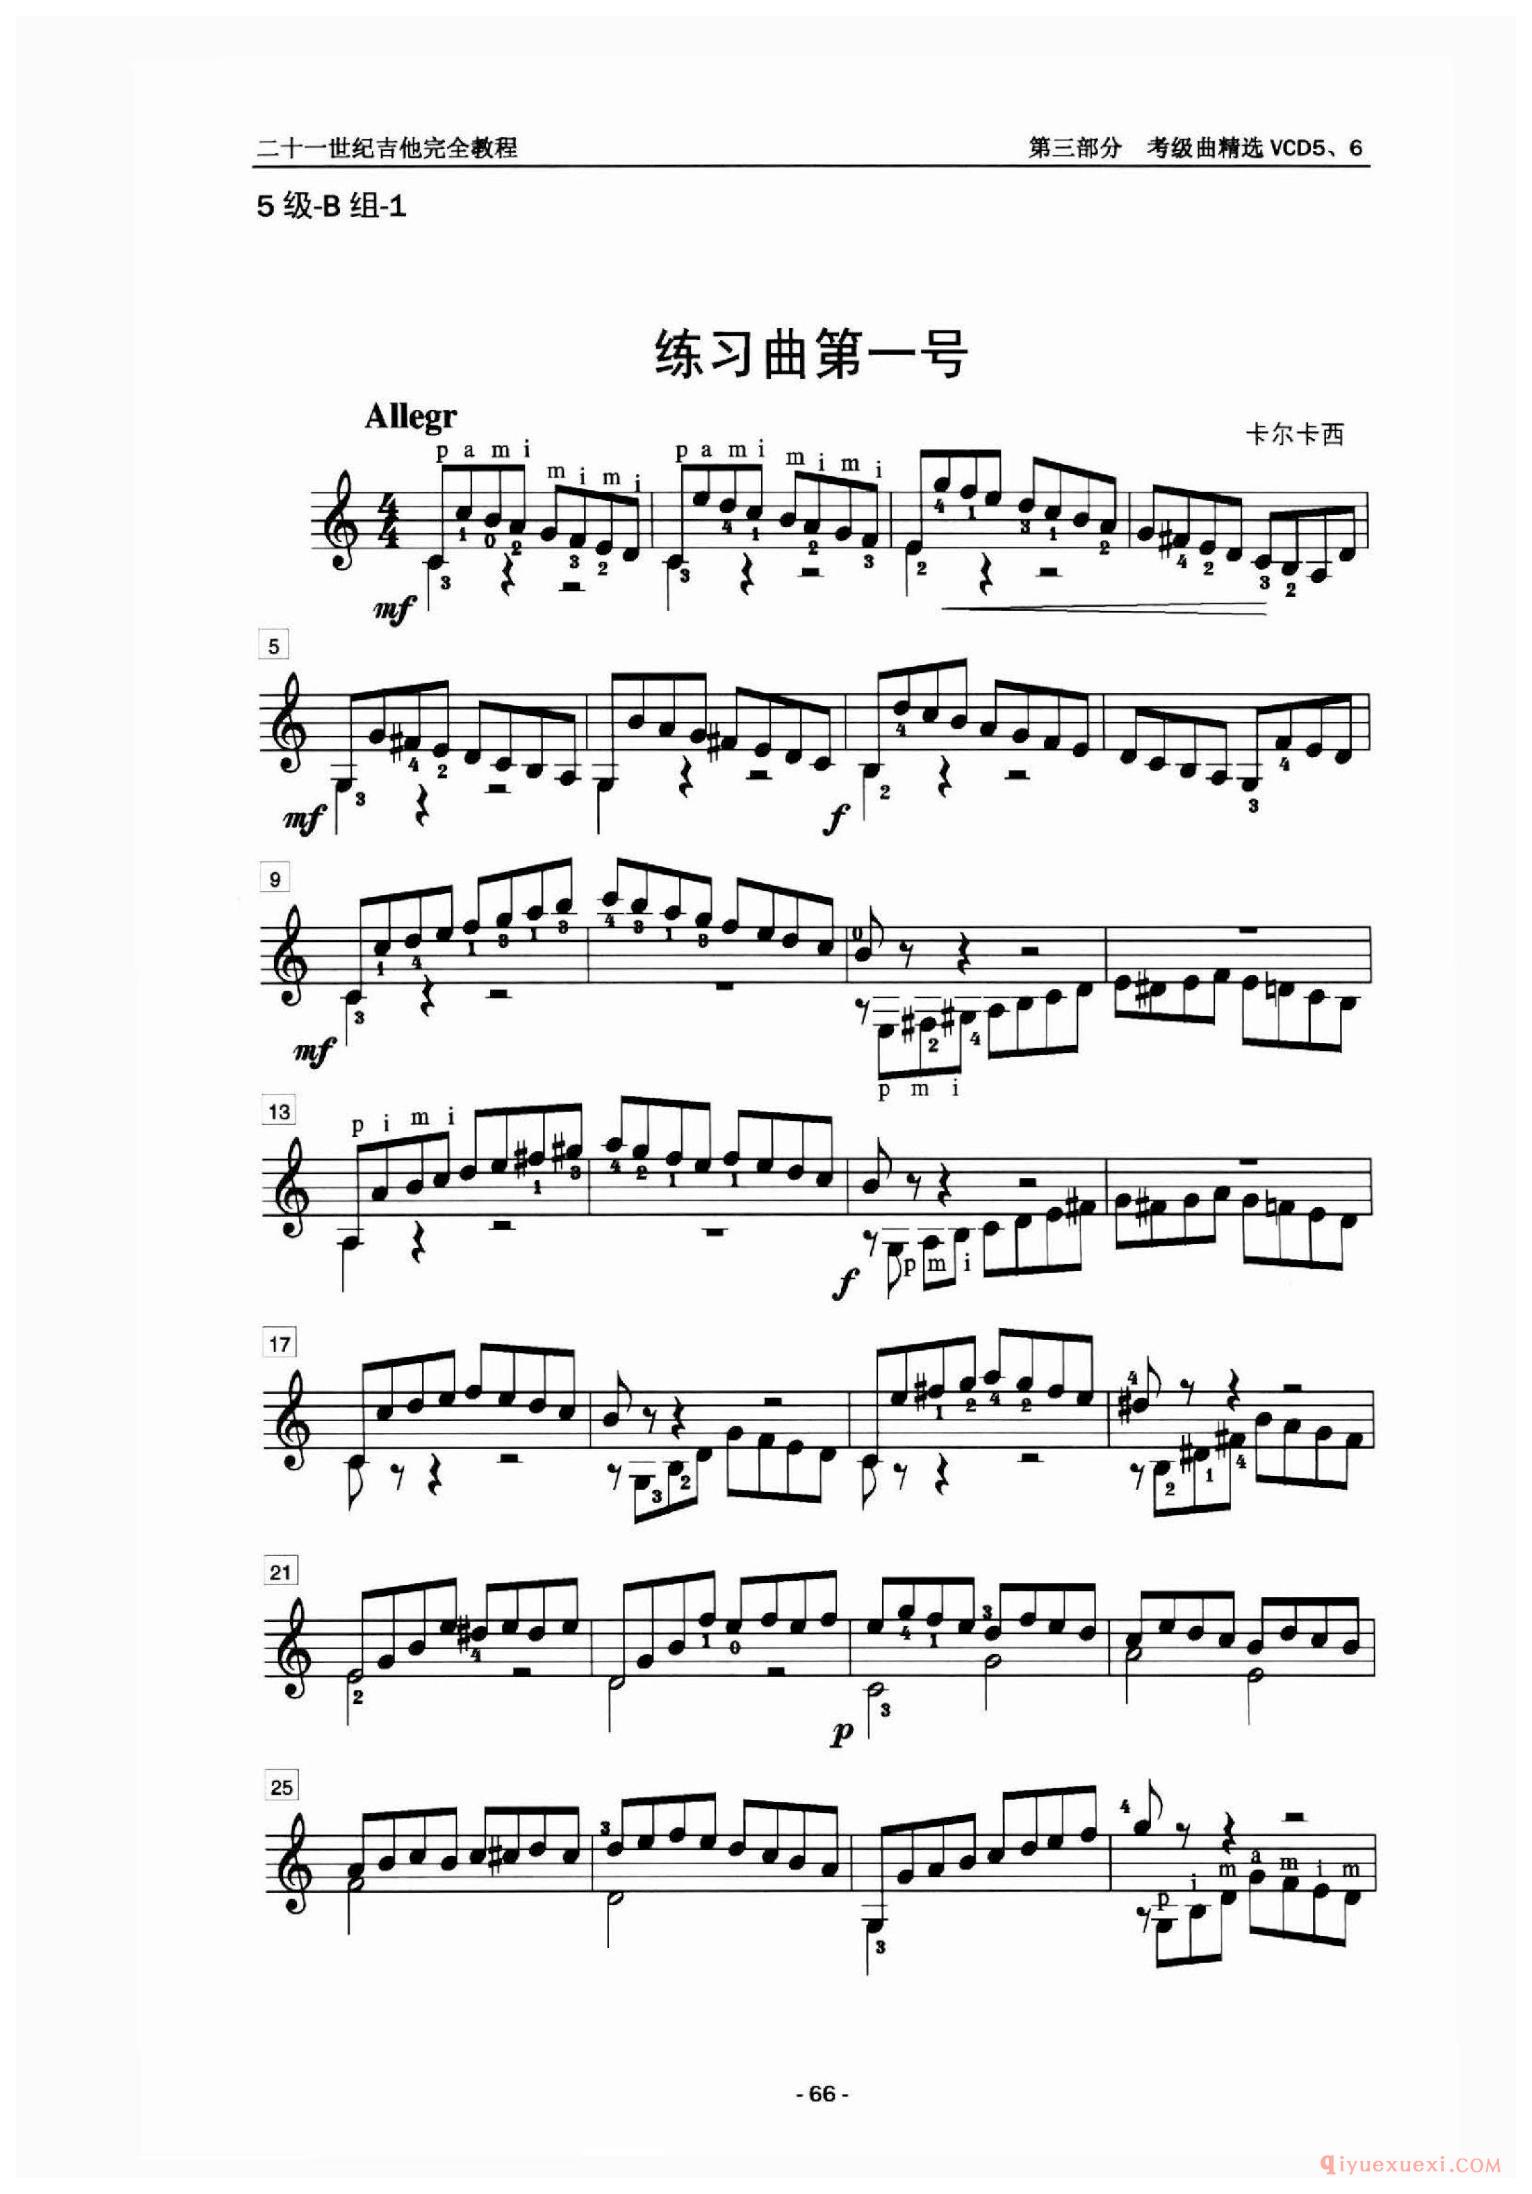 5级练习曲第一号_中国中央音乐学院吉他考级曲谱